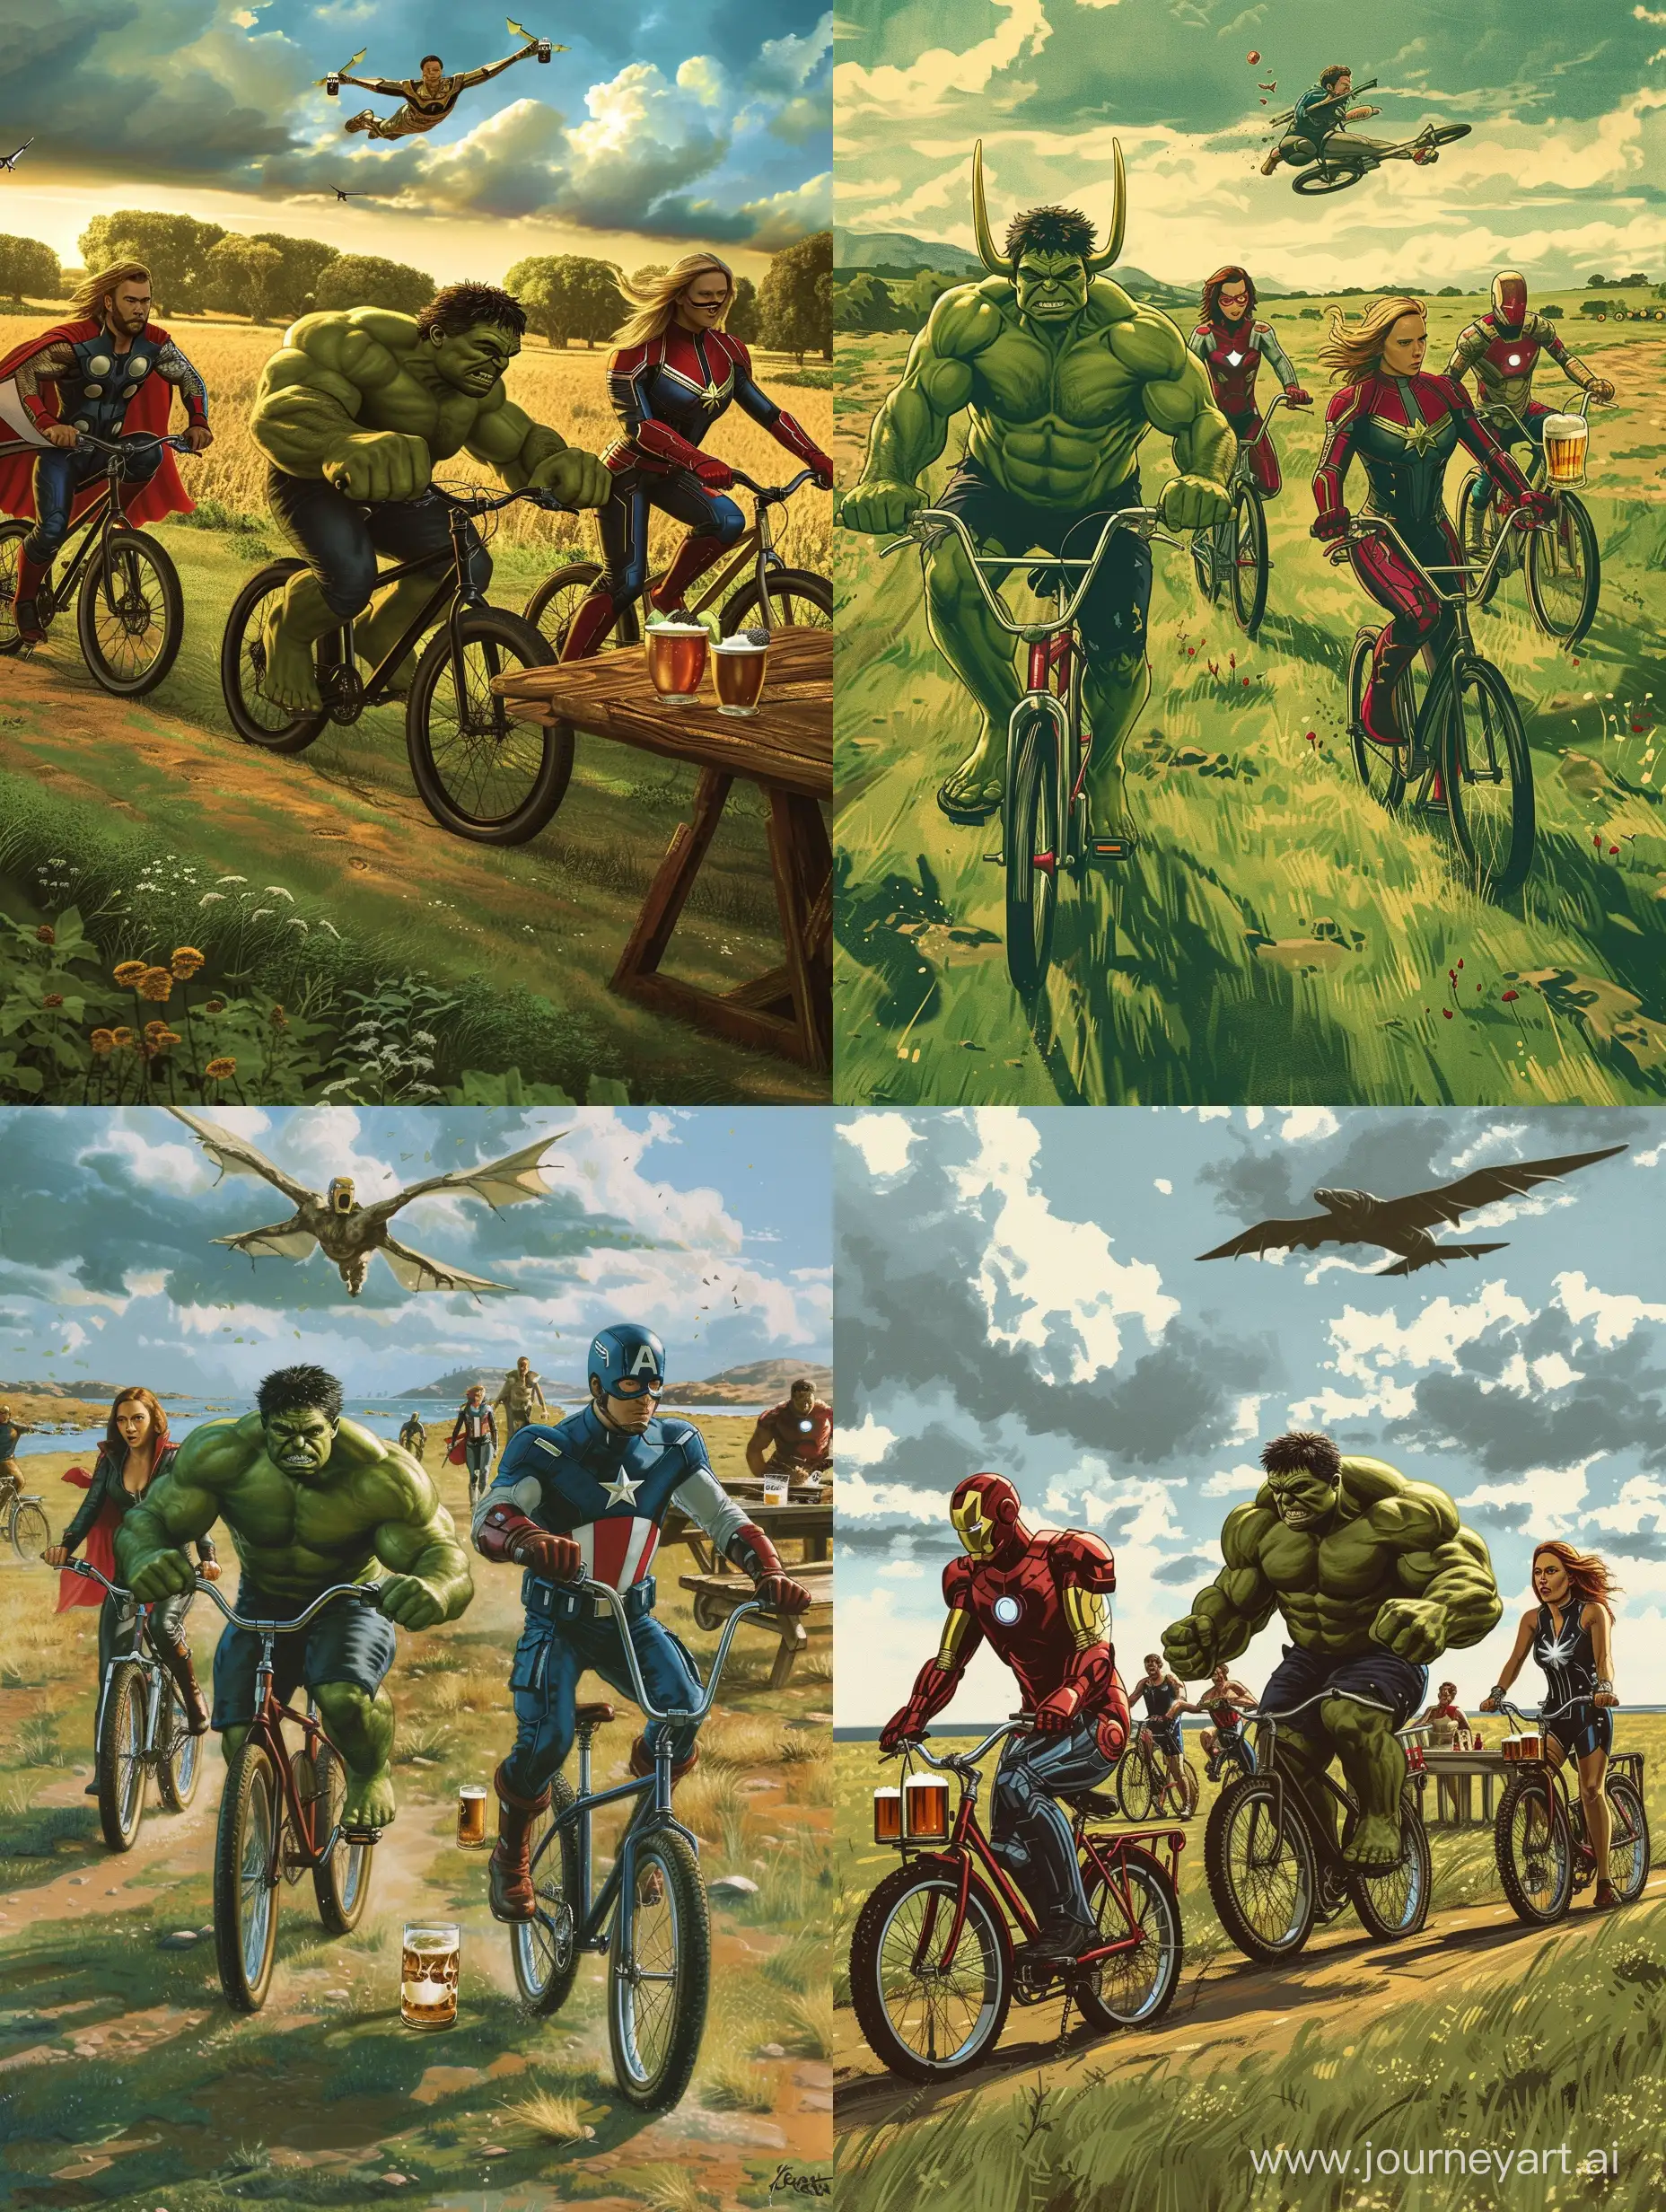 Халк,Локи,Железный человек,Капитан Америка,Наташа Романоф,Капитан Марвел,едут по полю на велосипедах к столу с пивом 